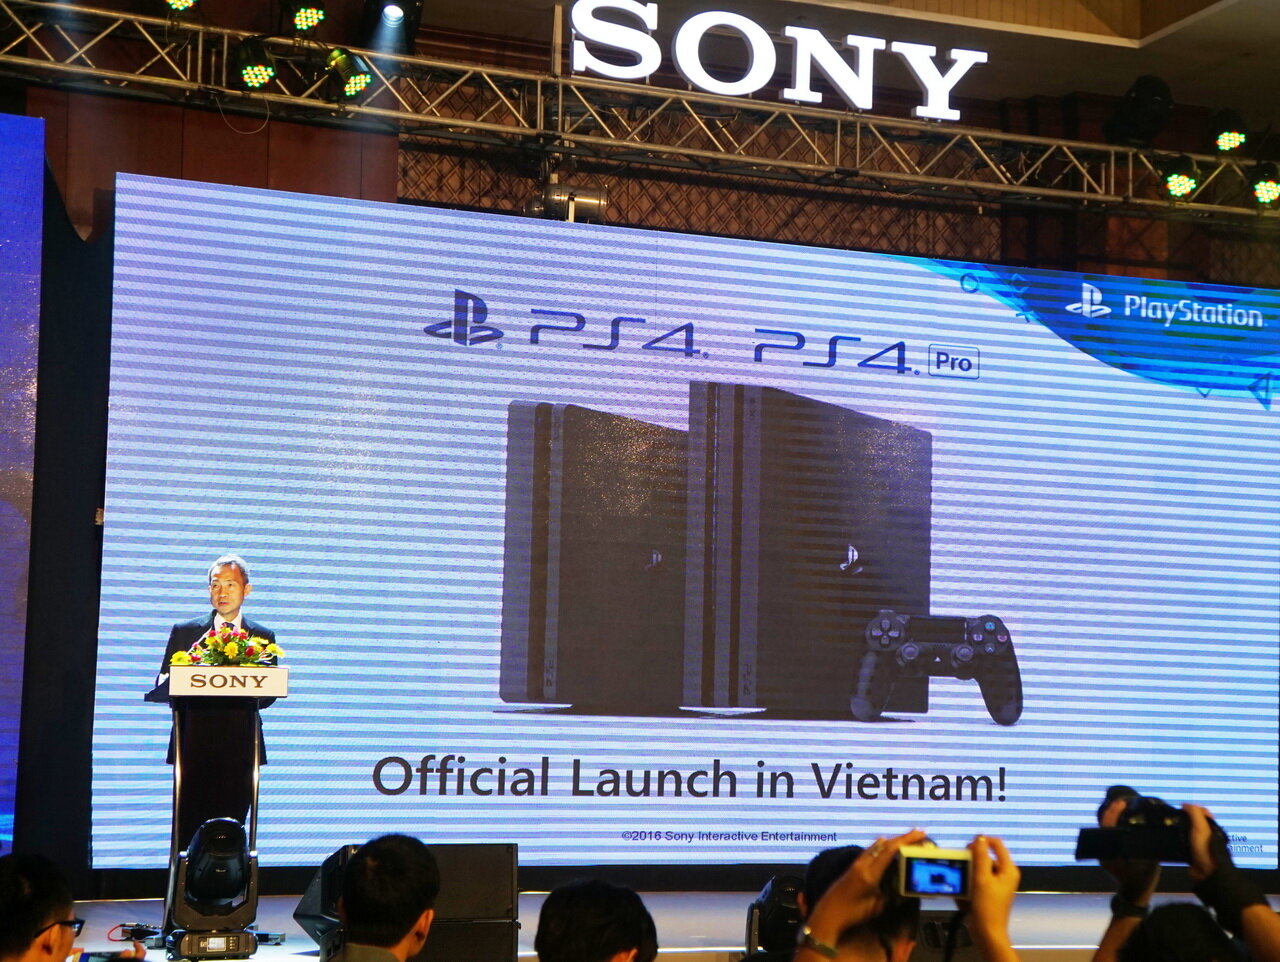 Sự kiện hãng Sony chính thức bán máy chơi game PS4 tại Việt Nam